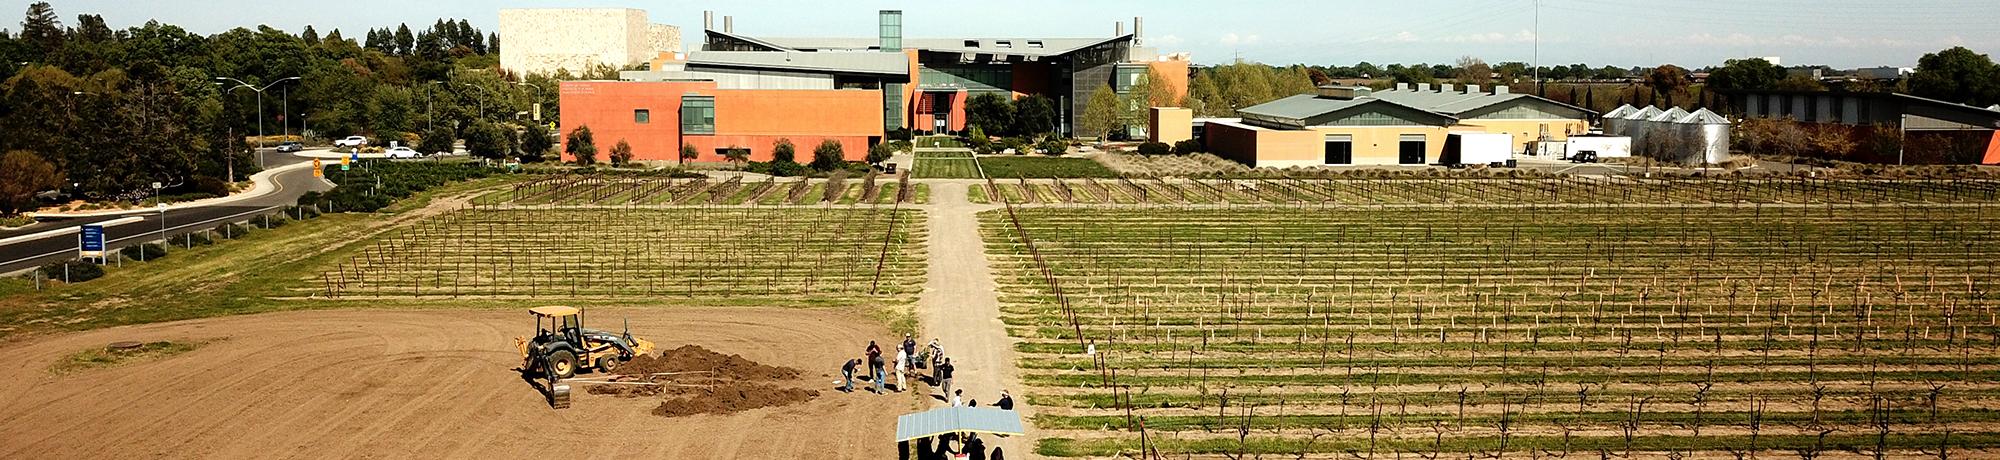 uc davis campus vineyard aerial photo